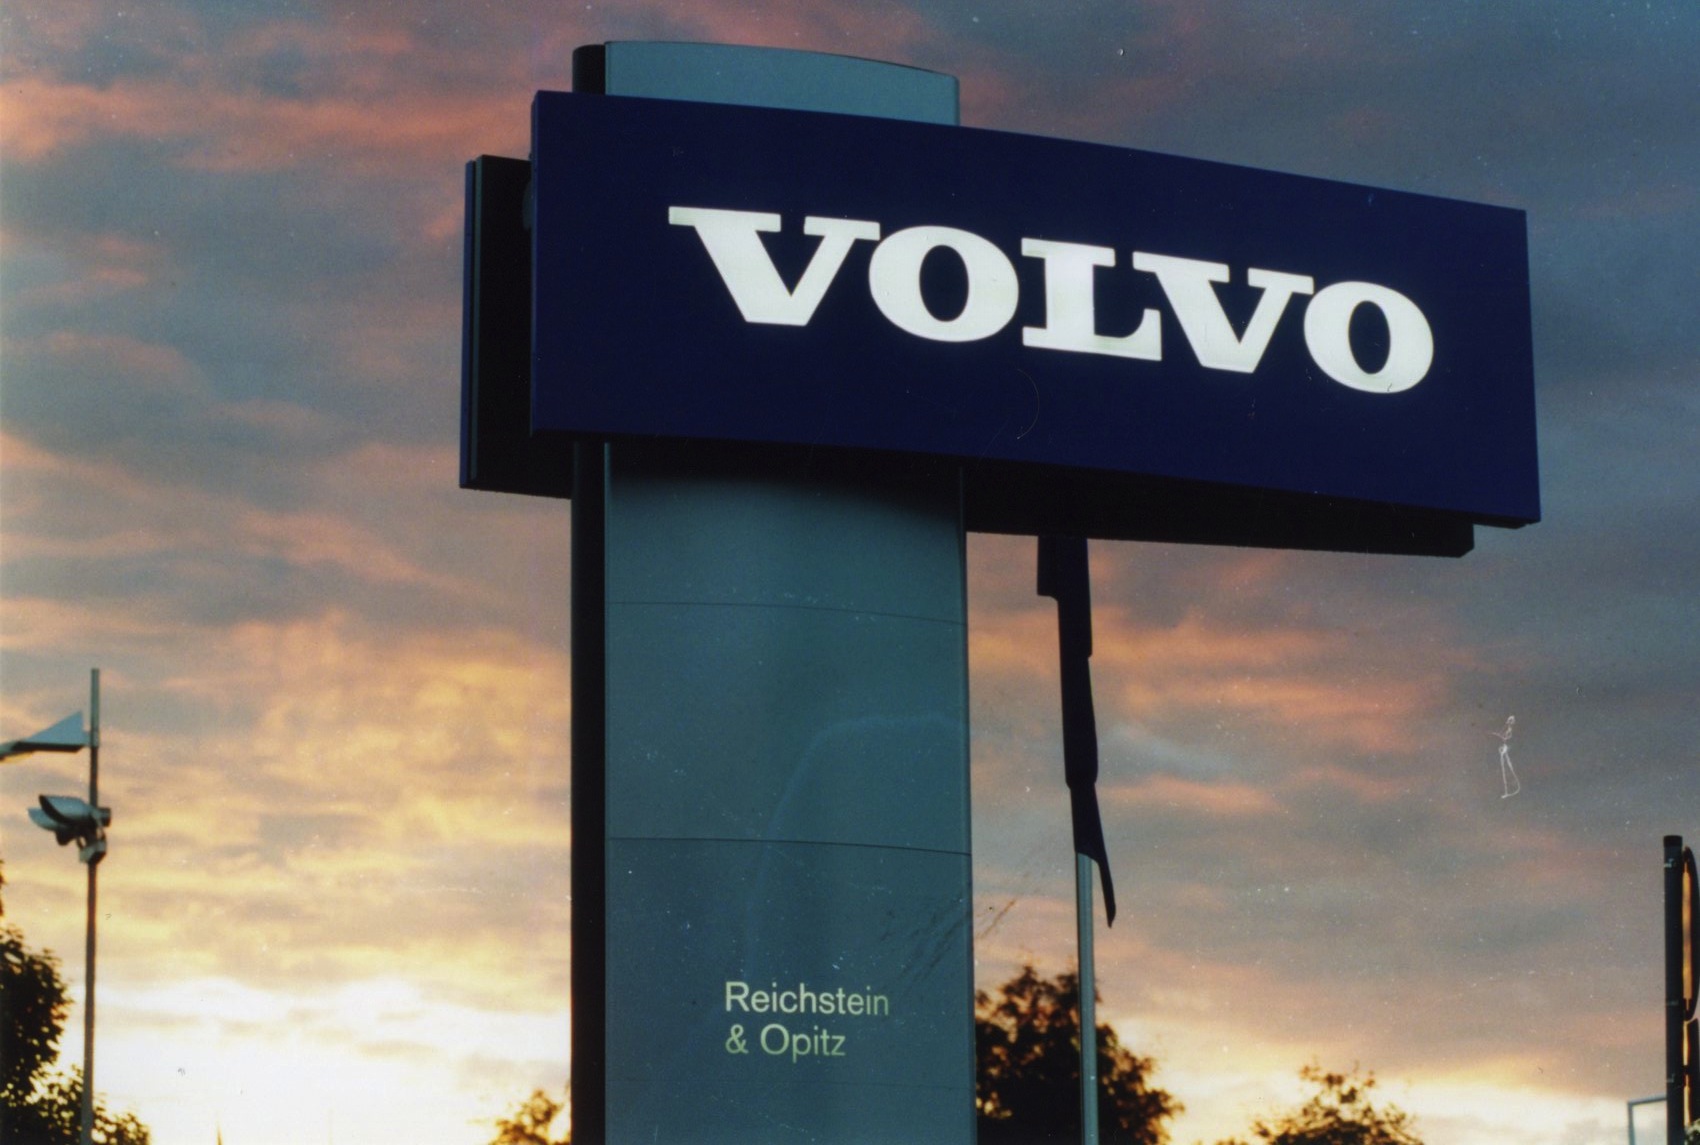 Reichstein & Opitz | Erweiterung um die Marke Volvo in Jena